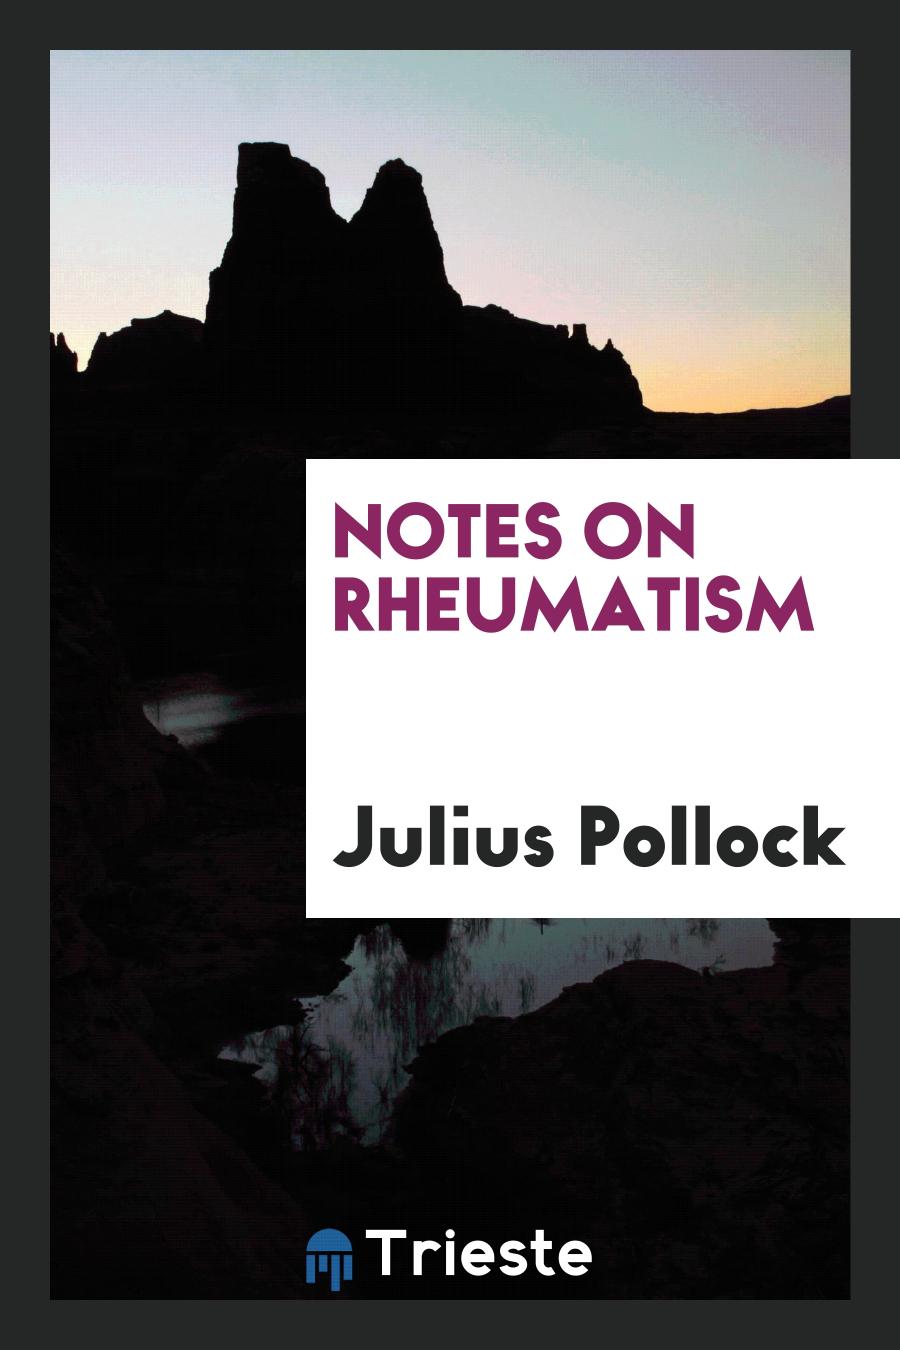 Notes on rheumatism